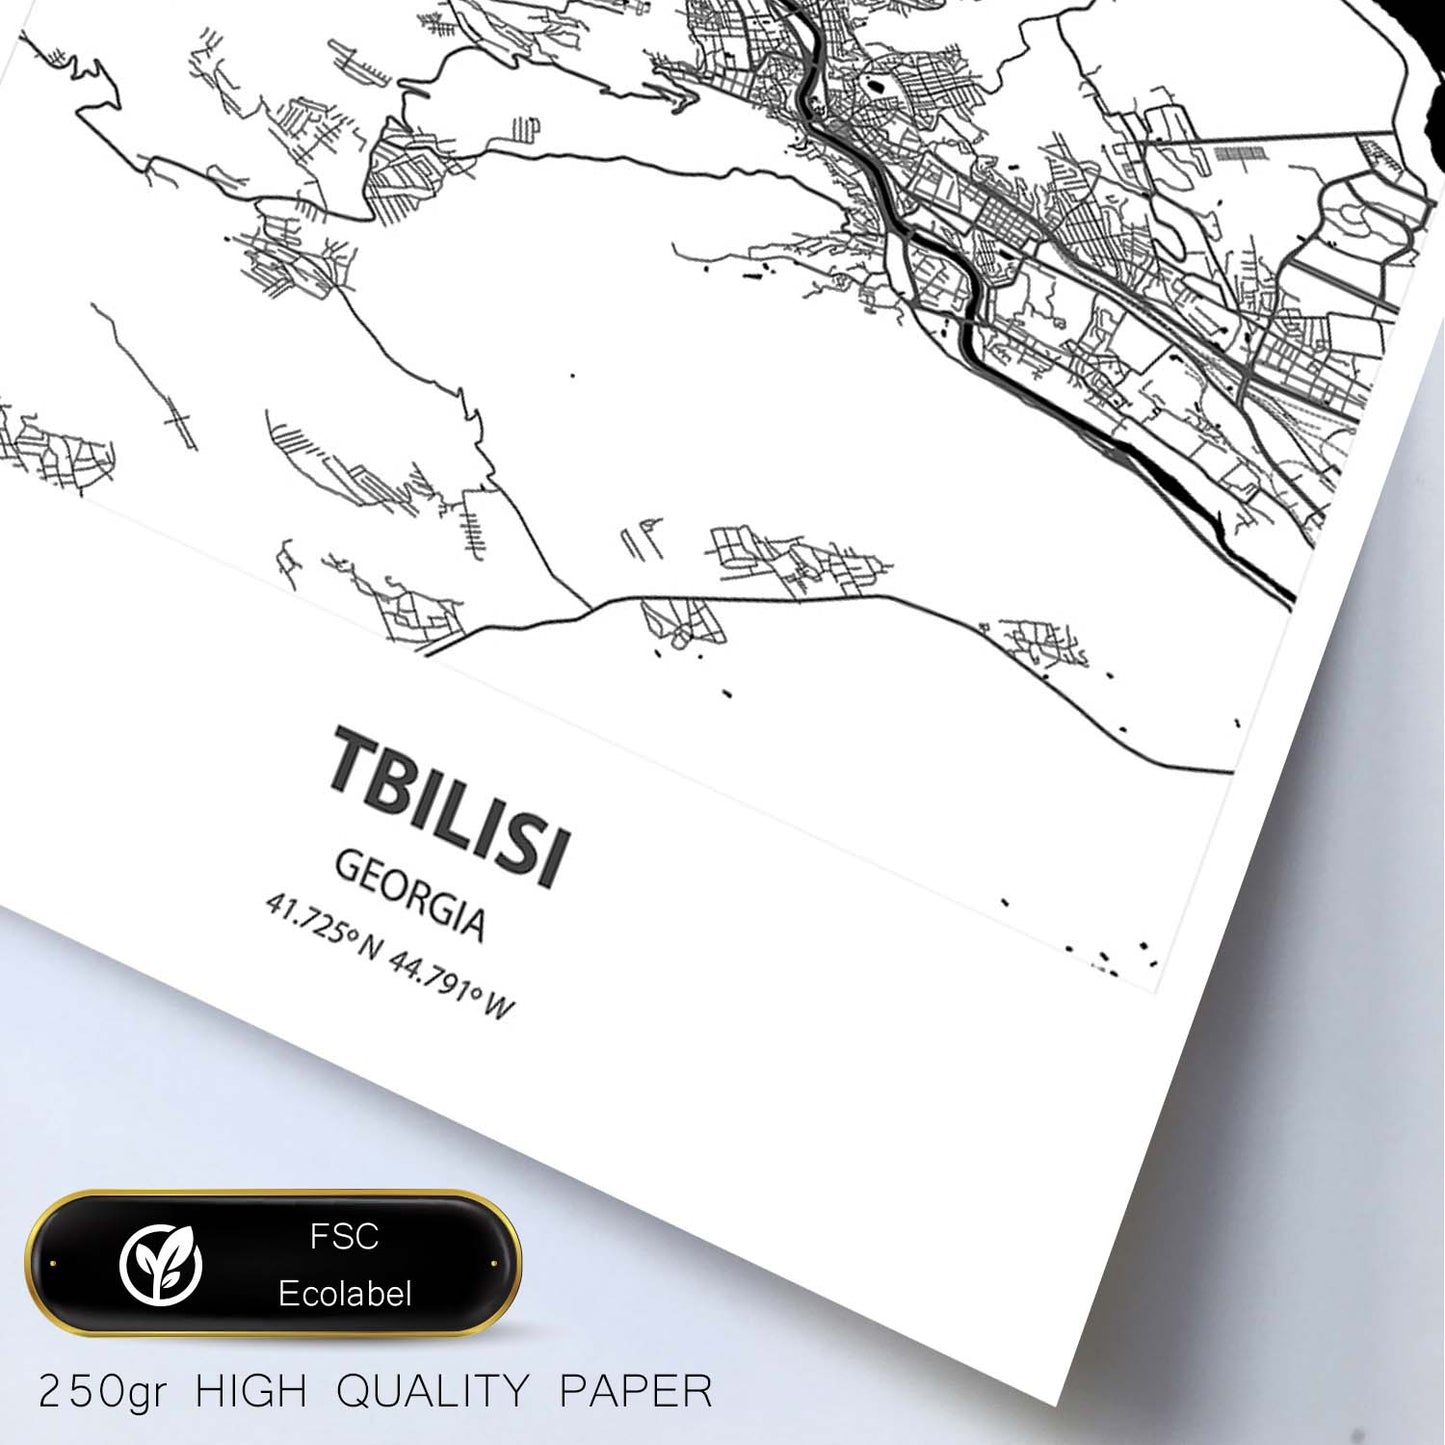 Poster con mapa de Tbilisi - Georgia. Láminas de ciudades de Oriente Medio con mares y ríos en color negro.-Artwork-Nacnic-Nacnic Estudio SL